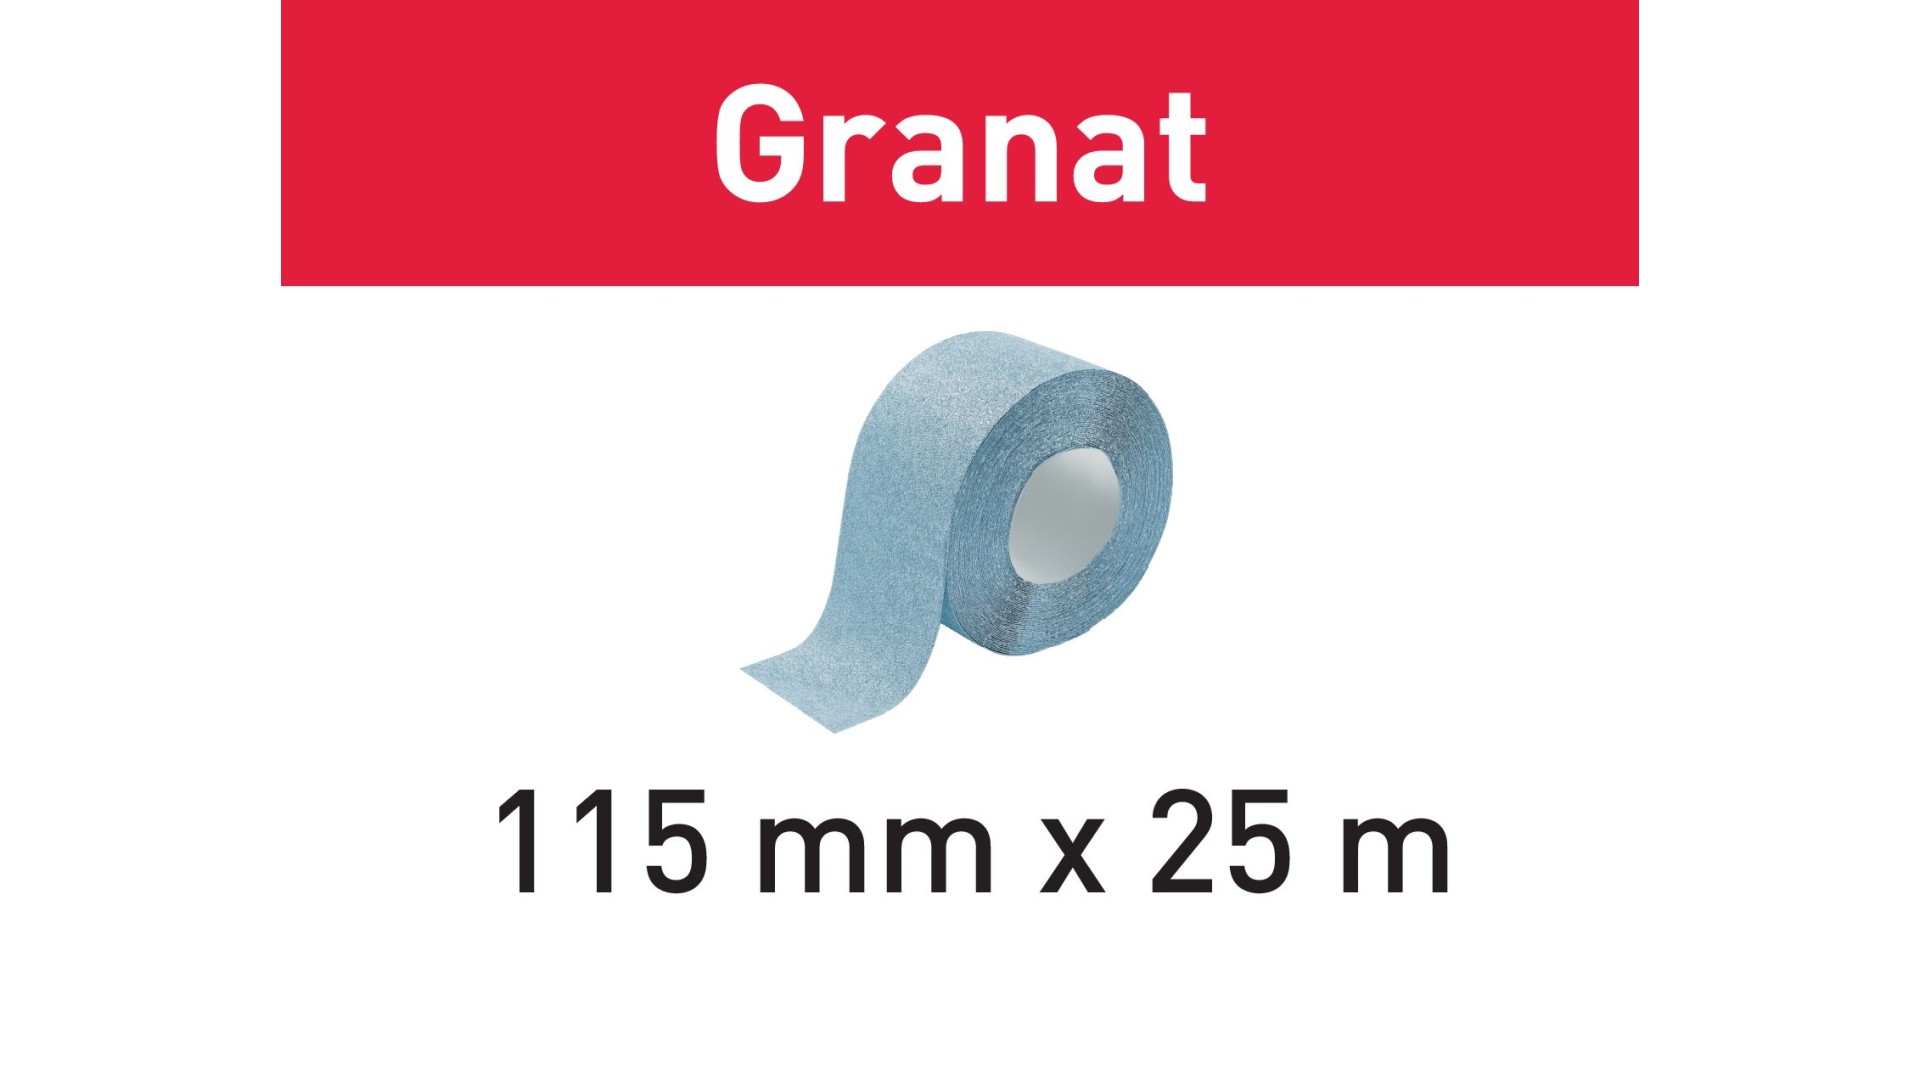 Шлифовальный материал Festool Granat P40. рулон 25 м 115x25m P40 GR